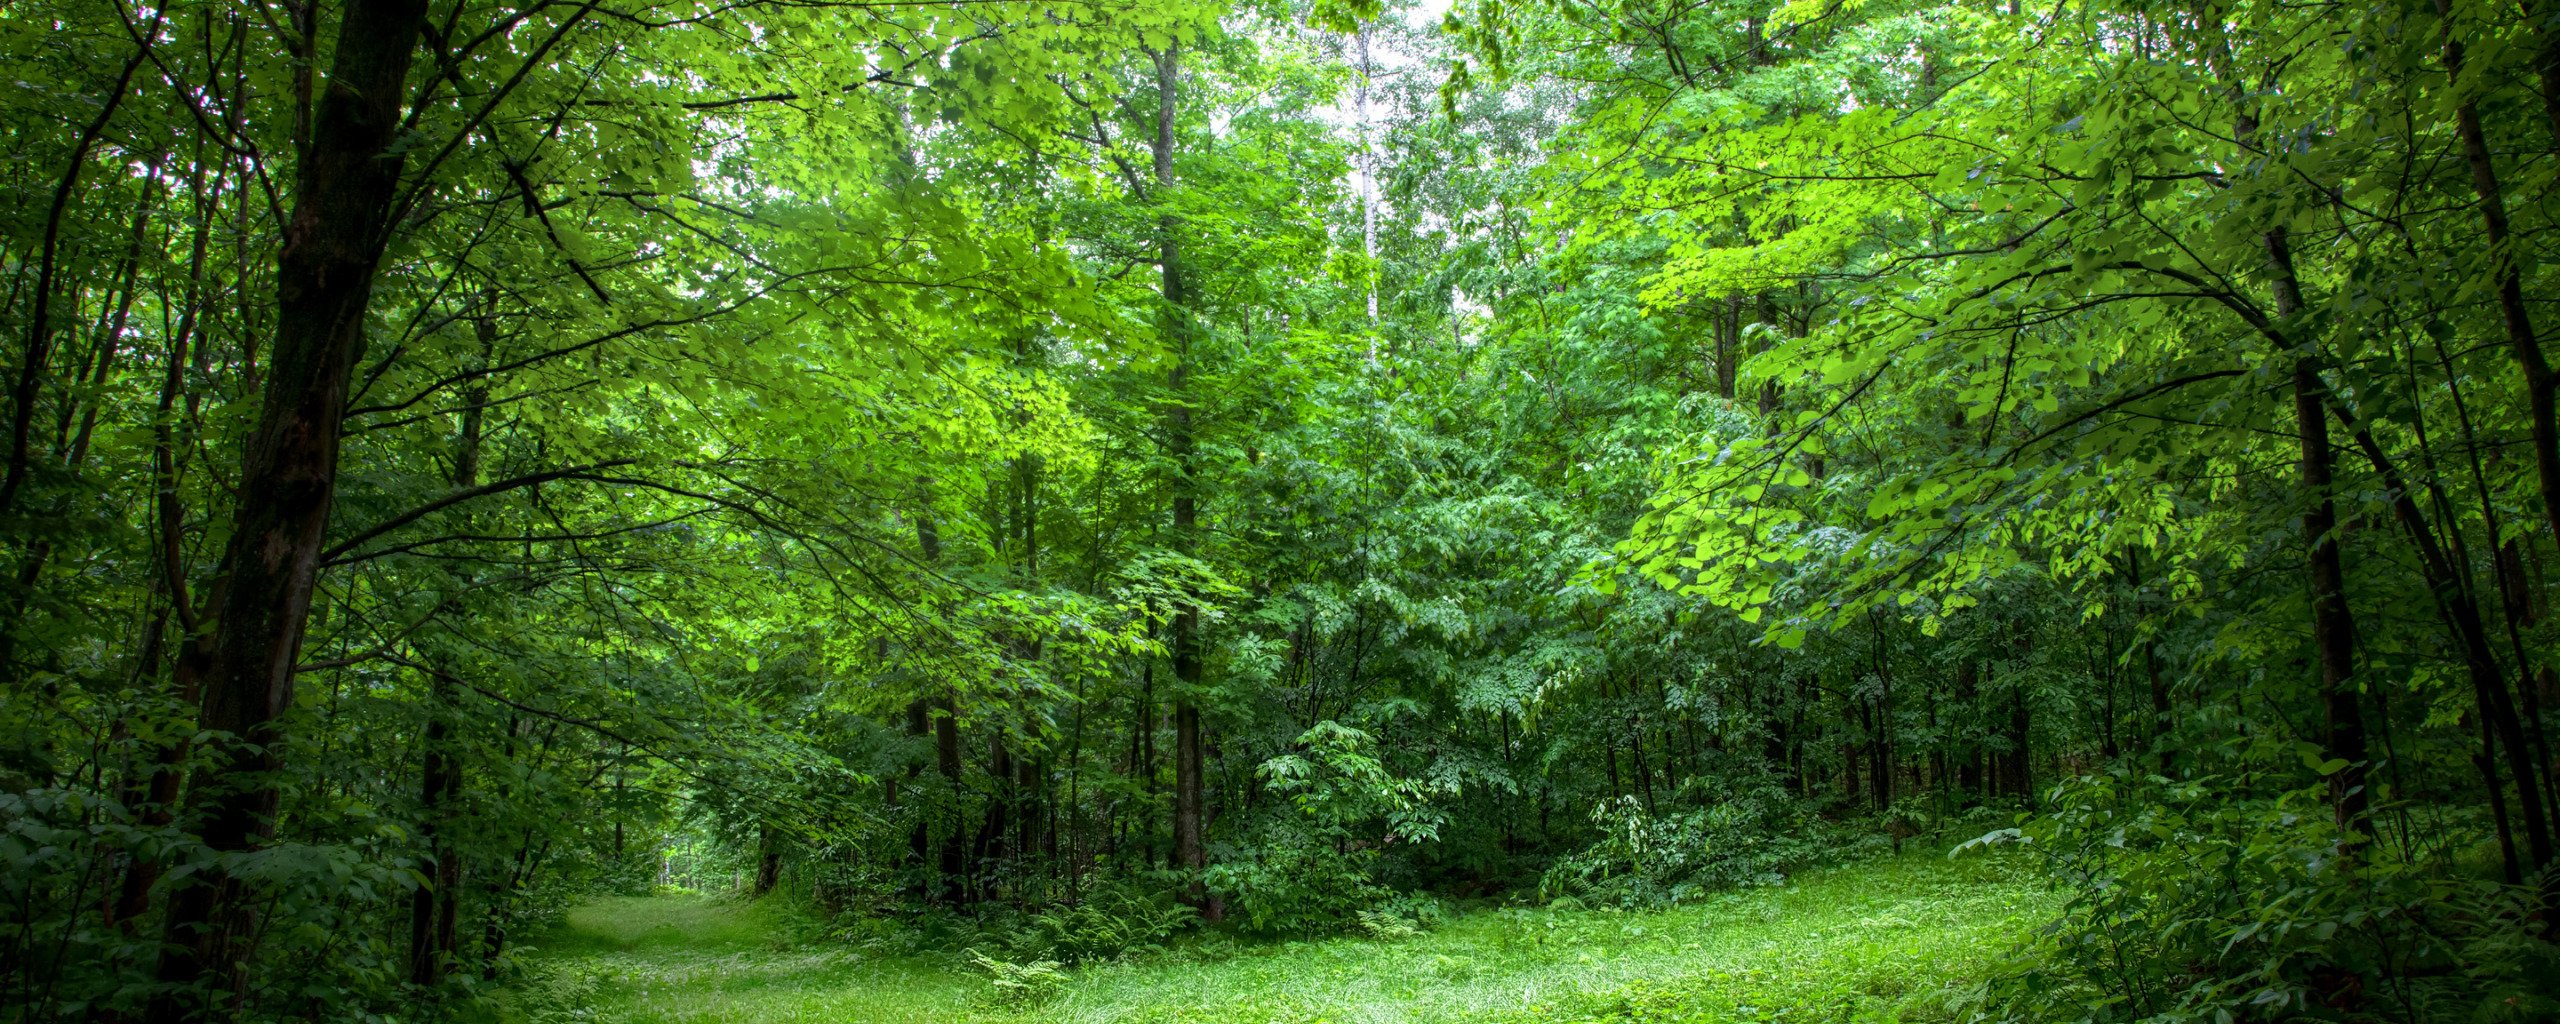 Вид средообразователь в лиственном лесу. Широколиственный лес. Дубовый лес. Прекрасный лес. Фото леса летом.